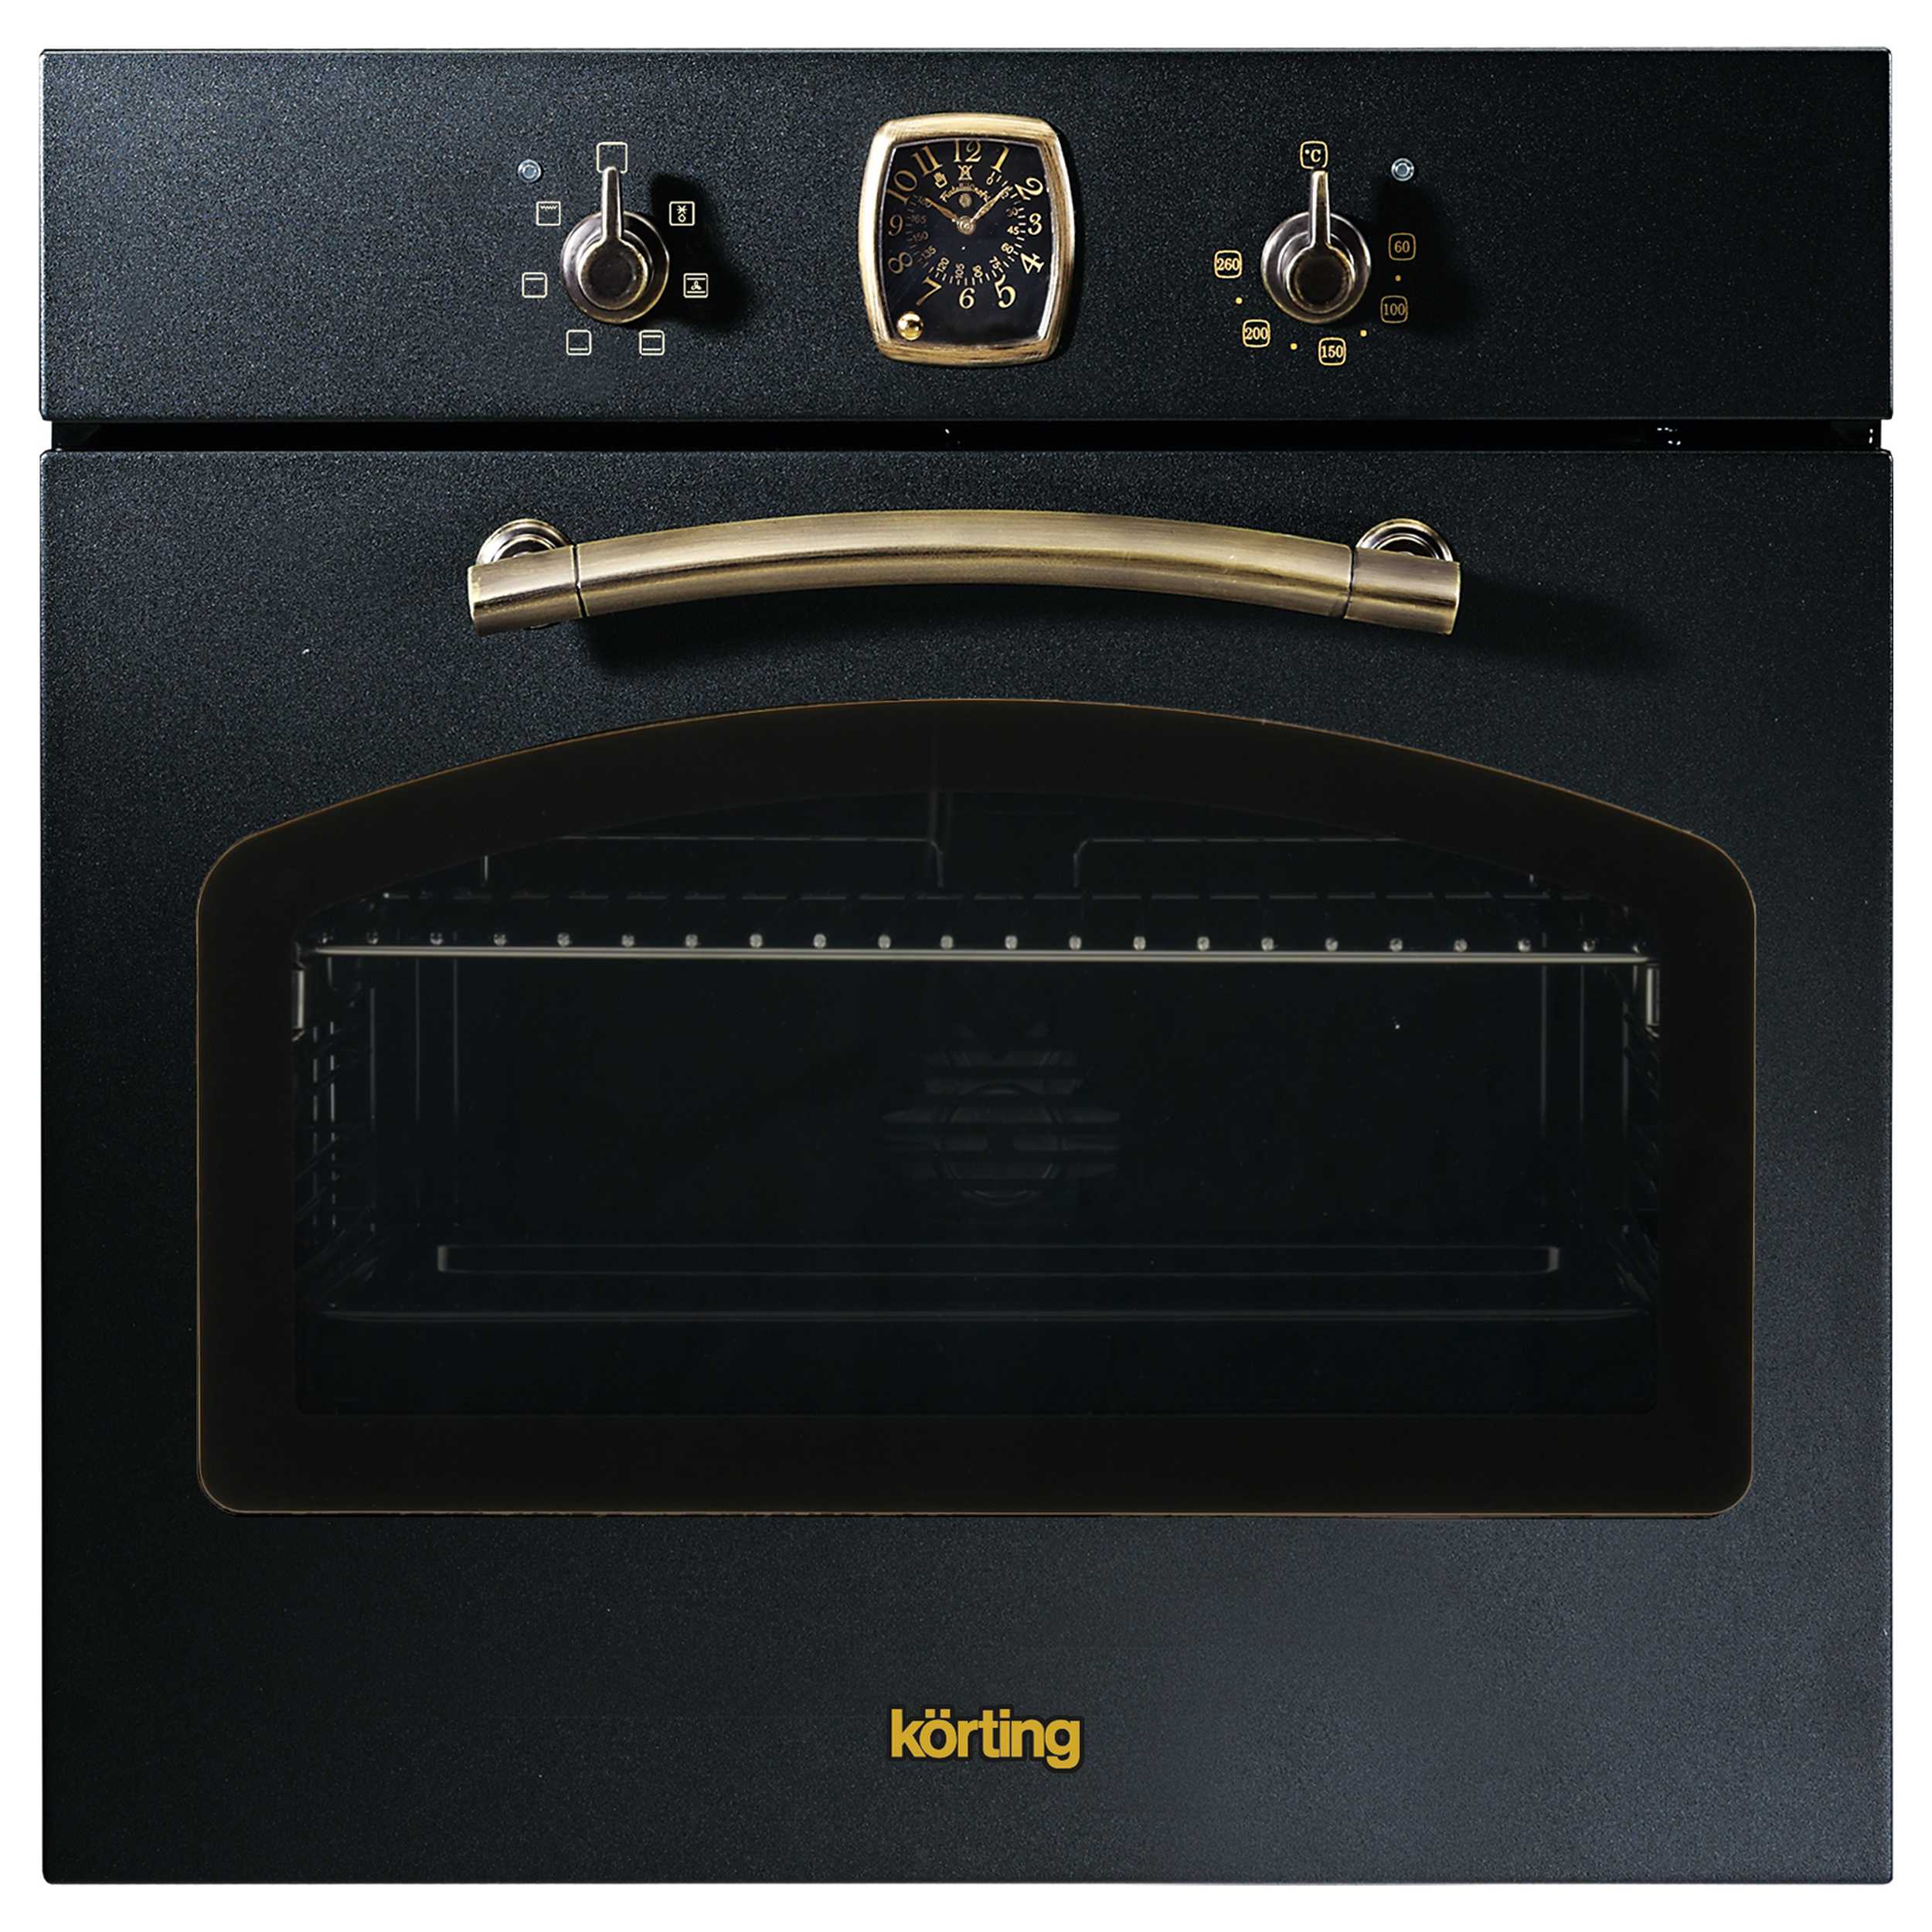 Встраиваемый электрический духовой шкаф Korting OKB 460 RN черный, золотистый смарт часы wearfitprox7 pro золотистый